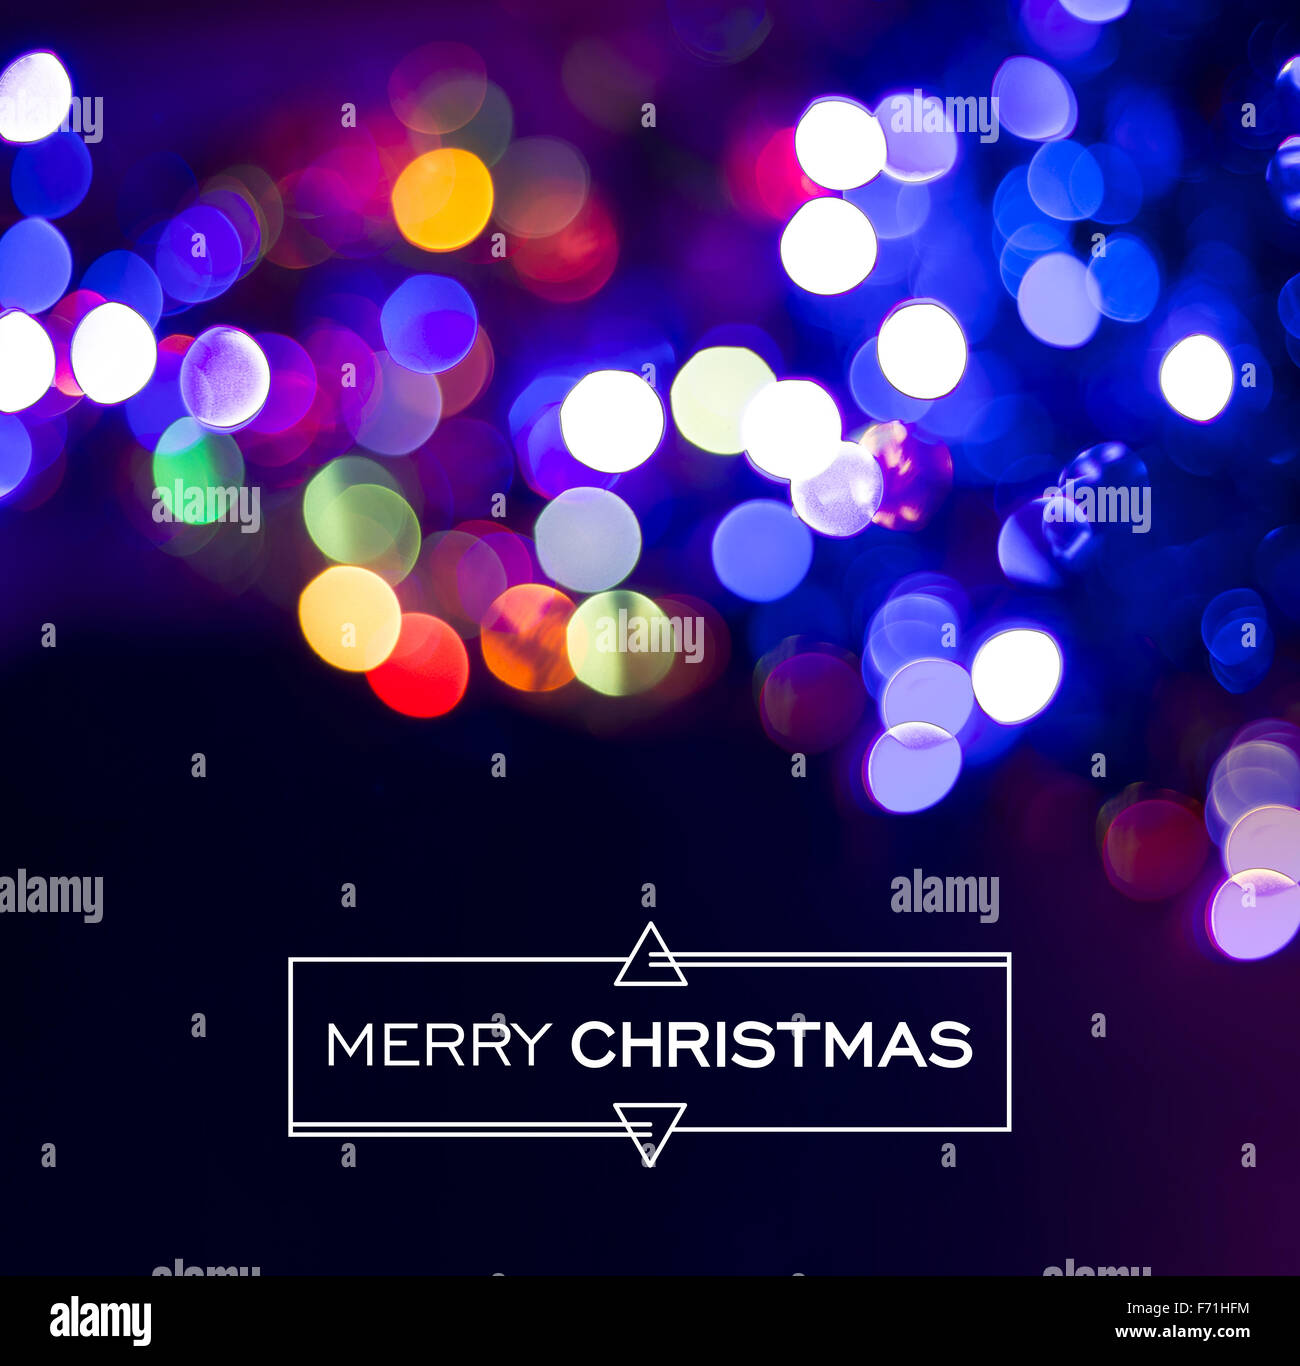 Frohe Weihnachten-Design: einfache abstrakte Bezeichnung auf hellem Hintergrund echte Bokeh. Ideal für Urlaub Grusskarte, Weihnachts-Plakat Stockfoto